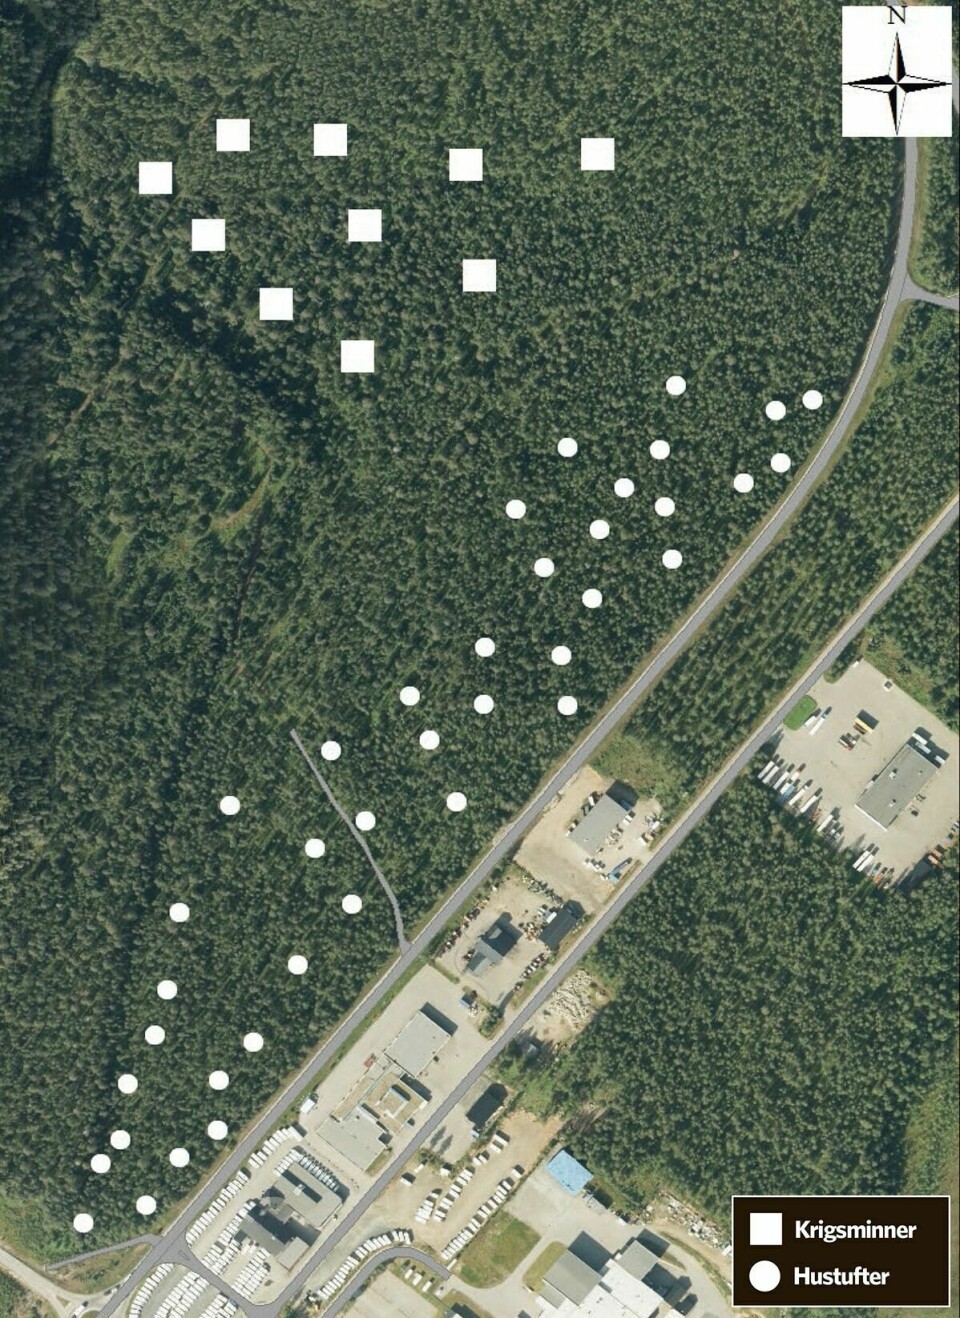 Hustuftene er markert med en hvit runding. De store hvite firkantene er krigsminner. (Illustrasjon: Troms Fylkeskommune)